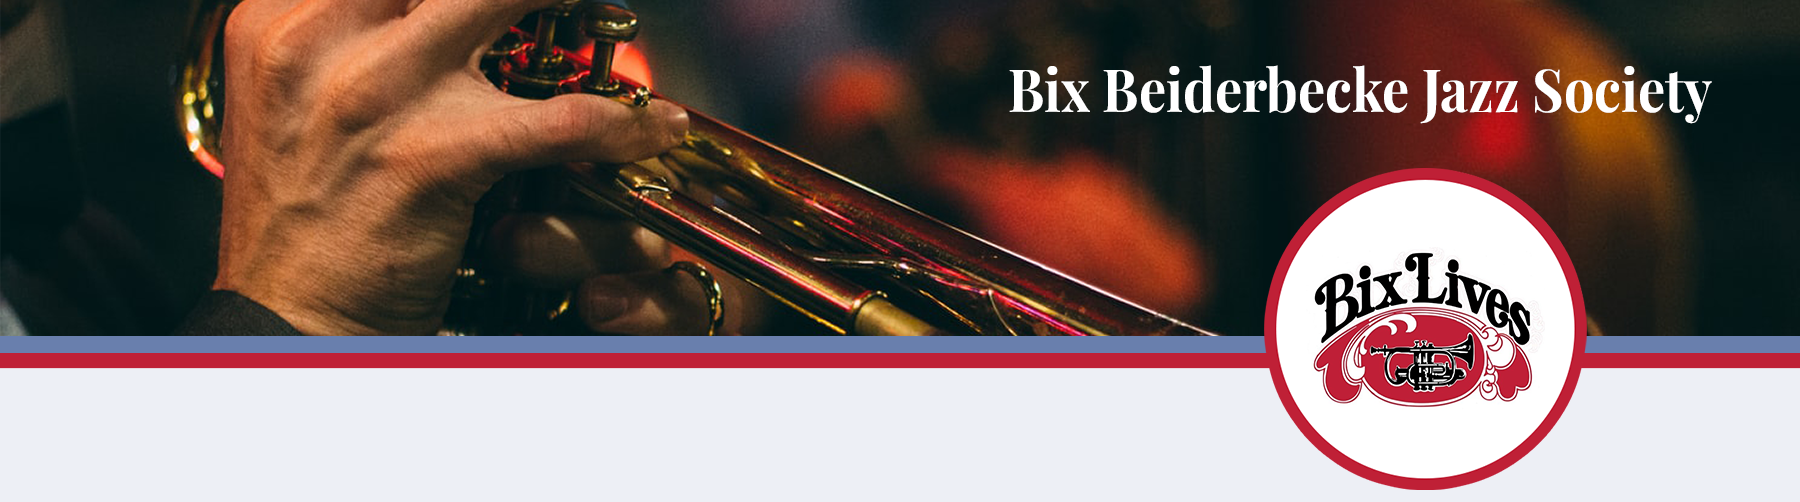 Bix Jazz Society logo with text 'Welcome to the Bix Jazz Society'